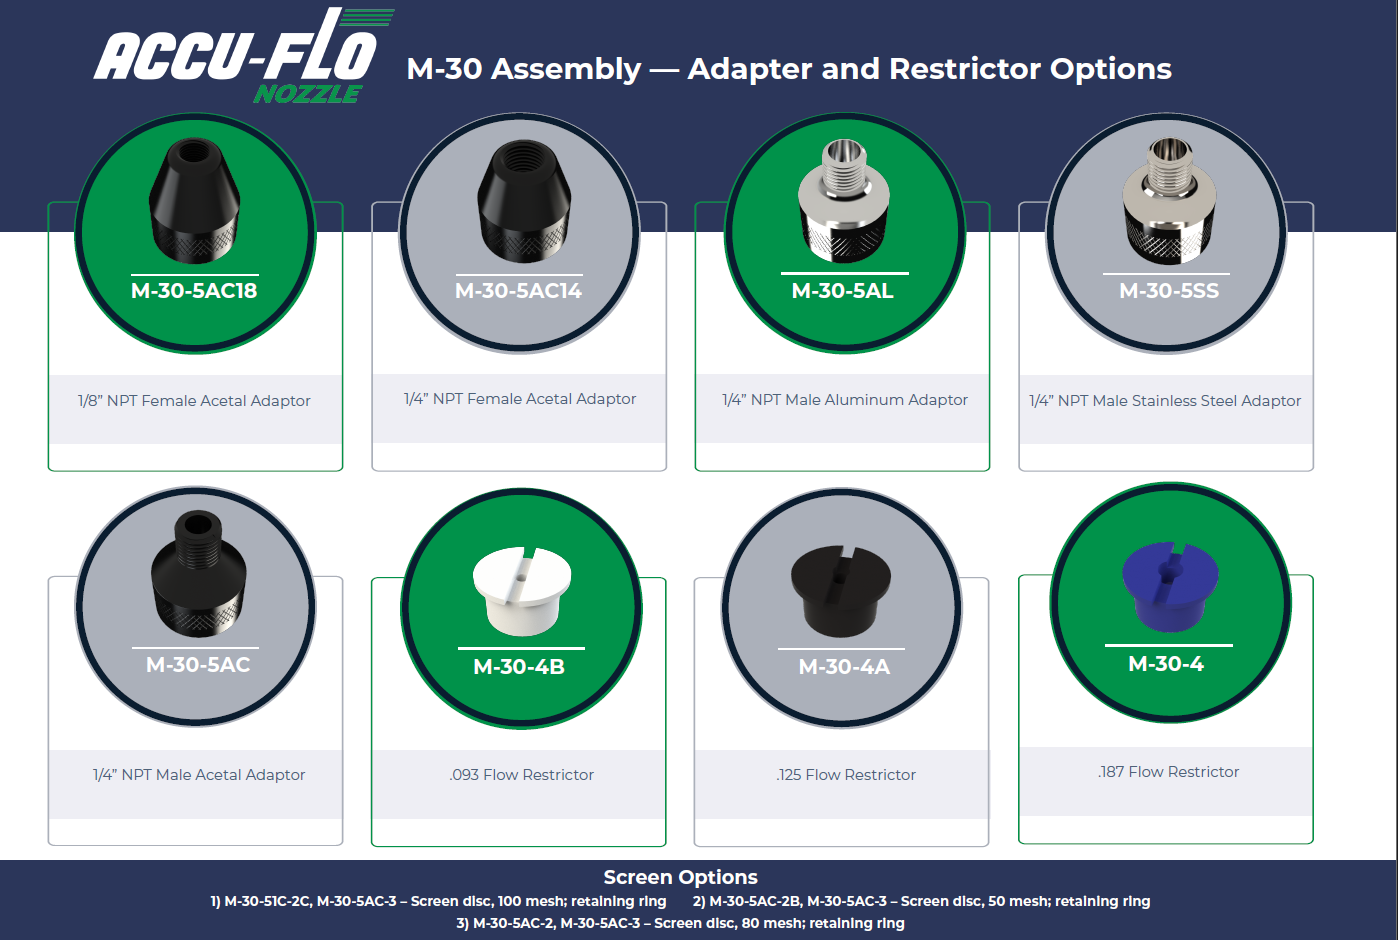 Tabela de adaptadores e restritores Accu-Flo